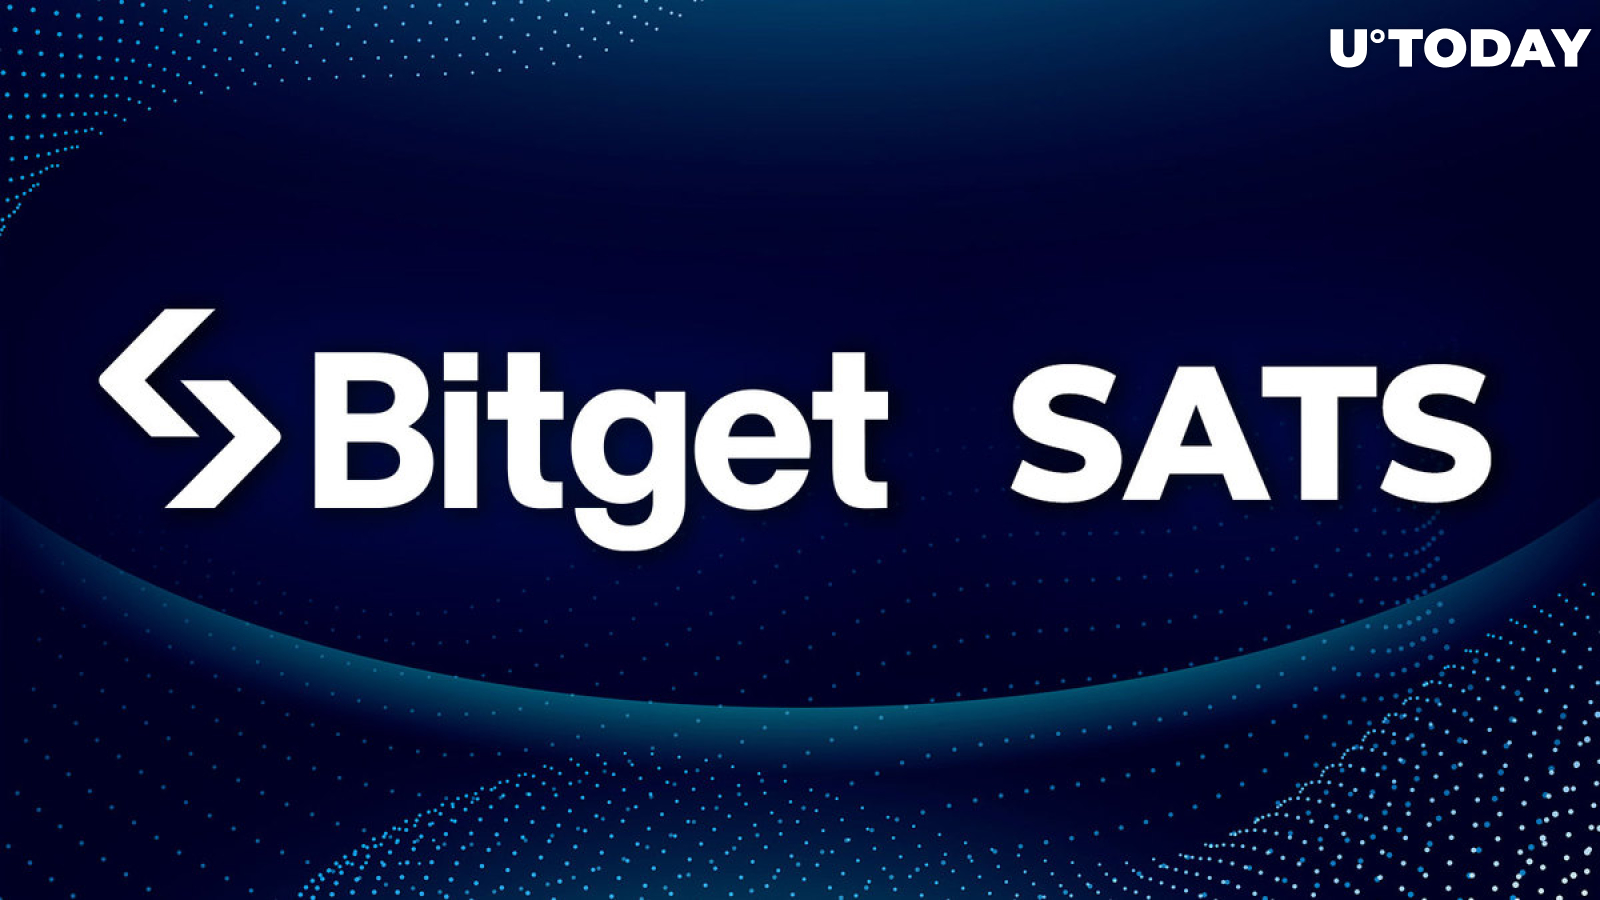 Ordinals Meme Coin Satoshi (SATS) Debuts on Bitget